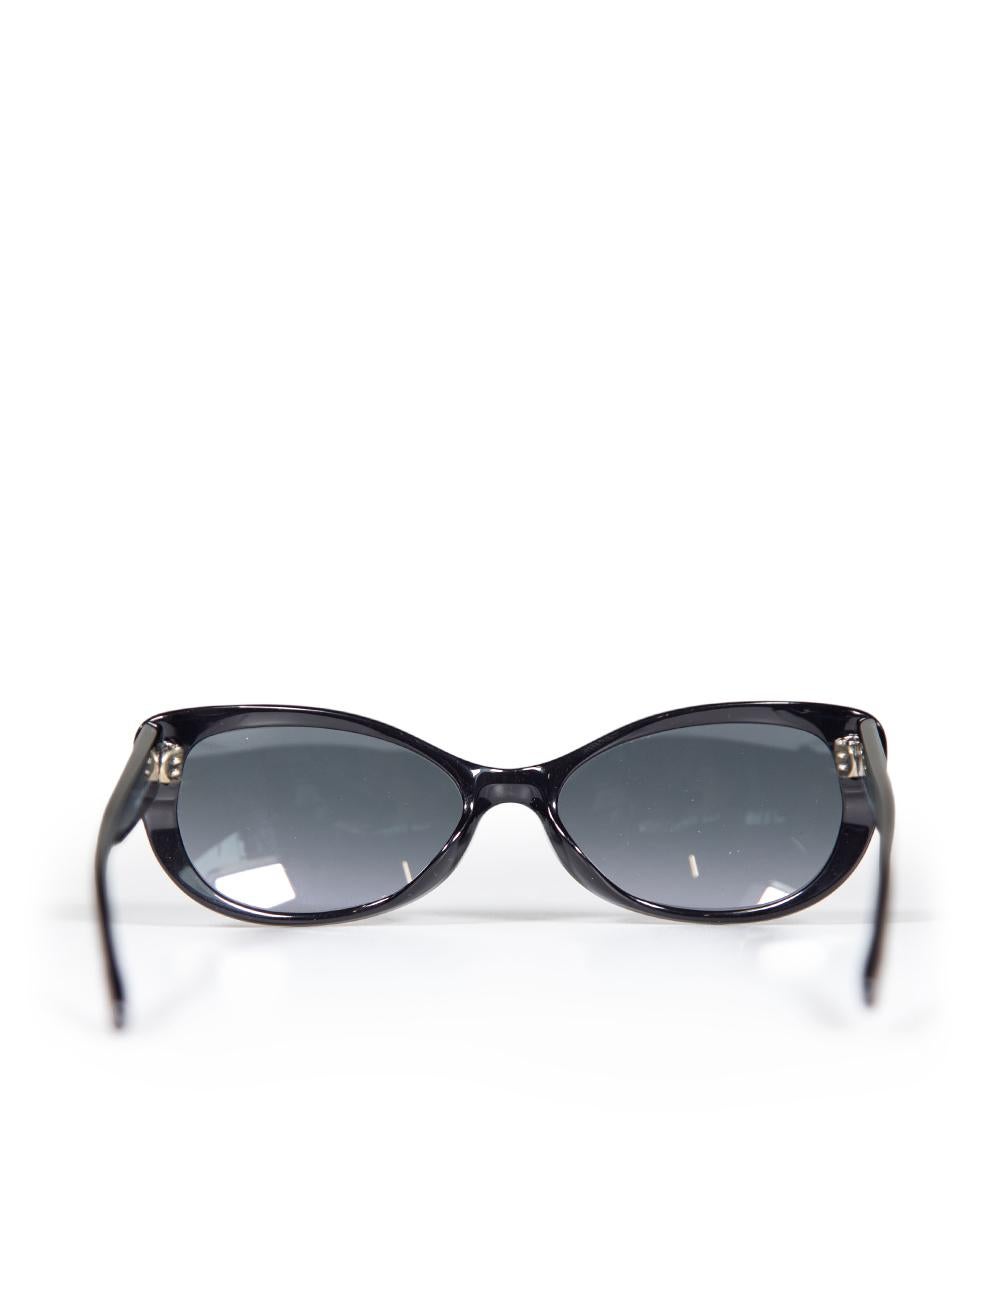 Women's Tom Ford Shiny Black Sebastian Sunglasses For Sale